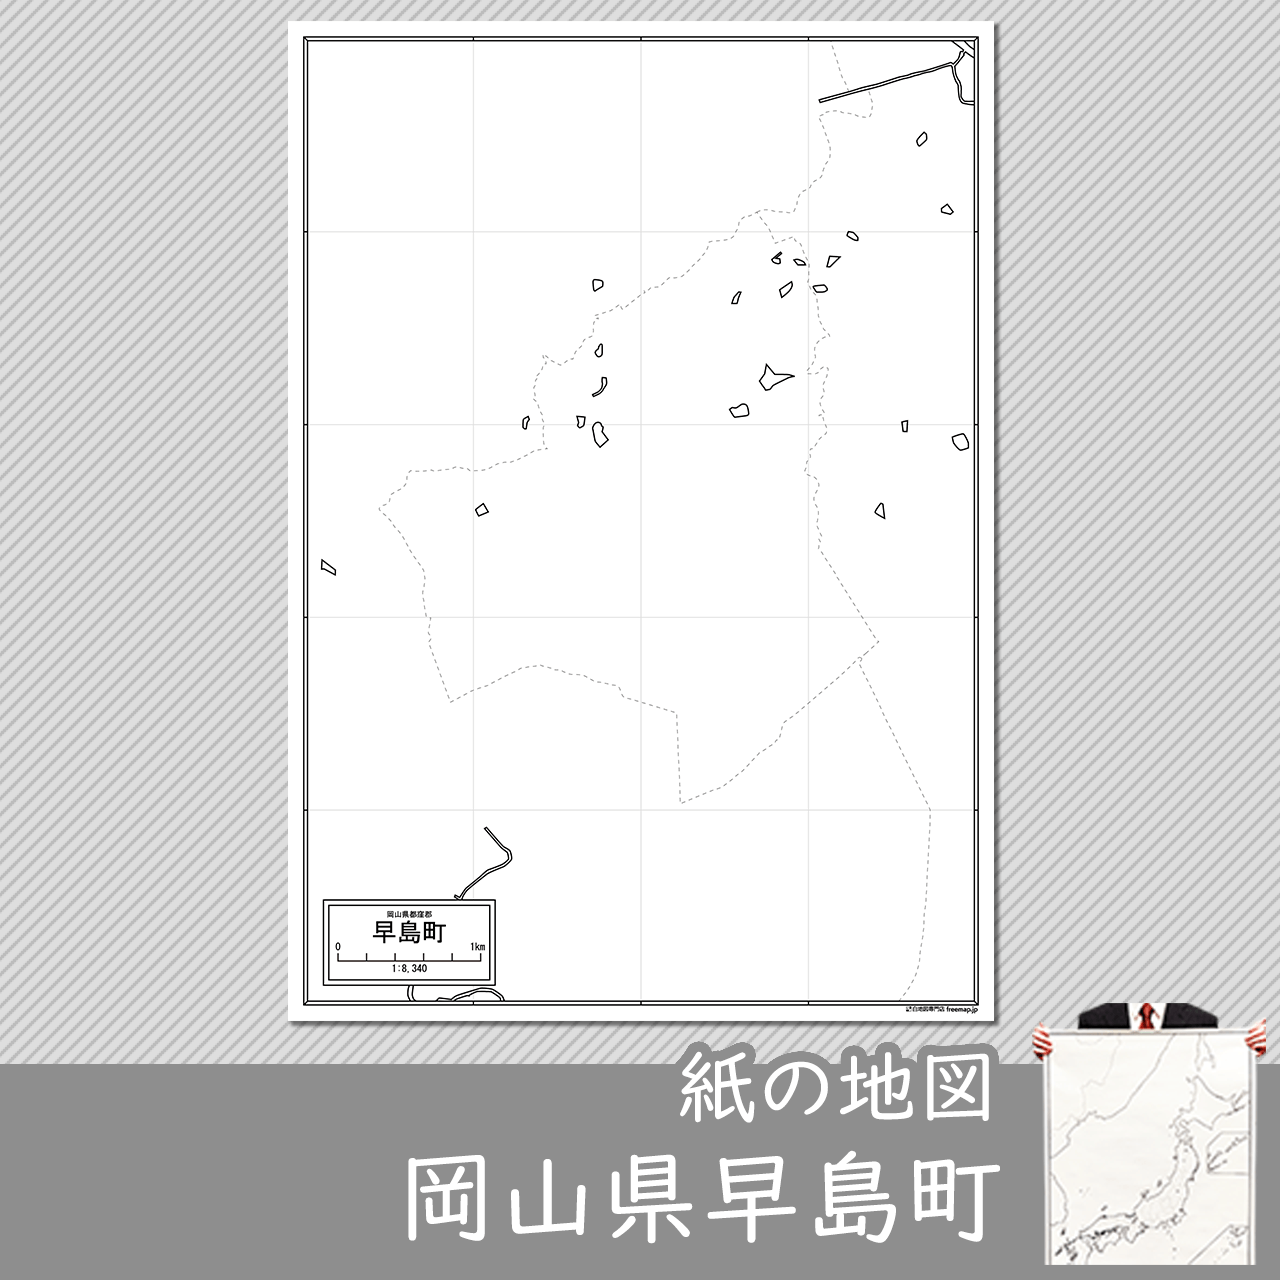 早島町の紙の白地図のサムネイル